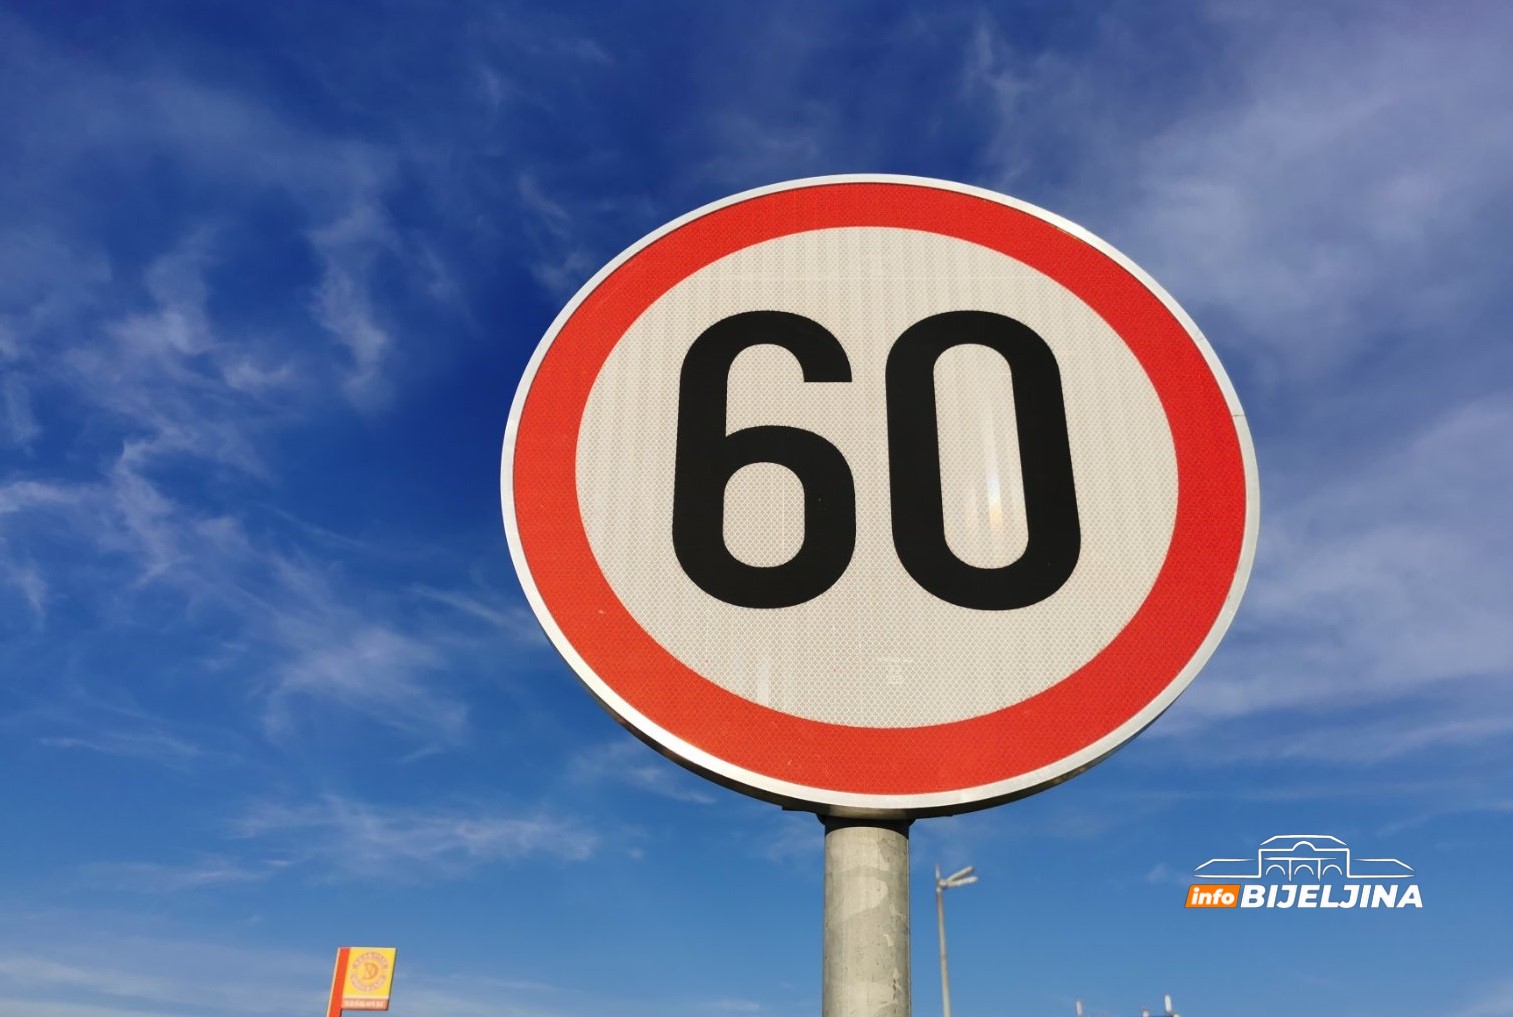 Potvrđeno za InfoBijeljina: Ko je odlučio da ograničenje na Pavlović putu bude smanjeno sa 80 na 60 km/h